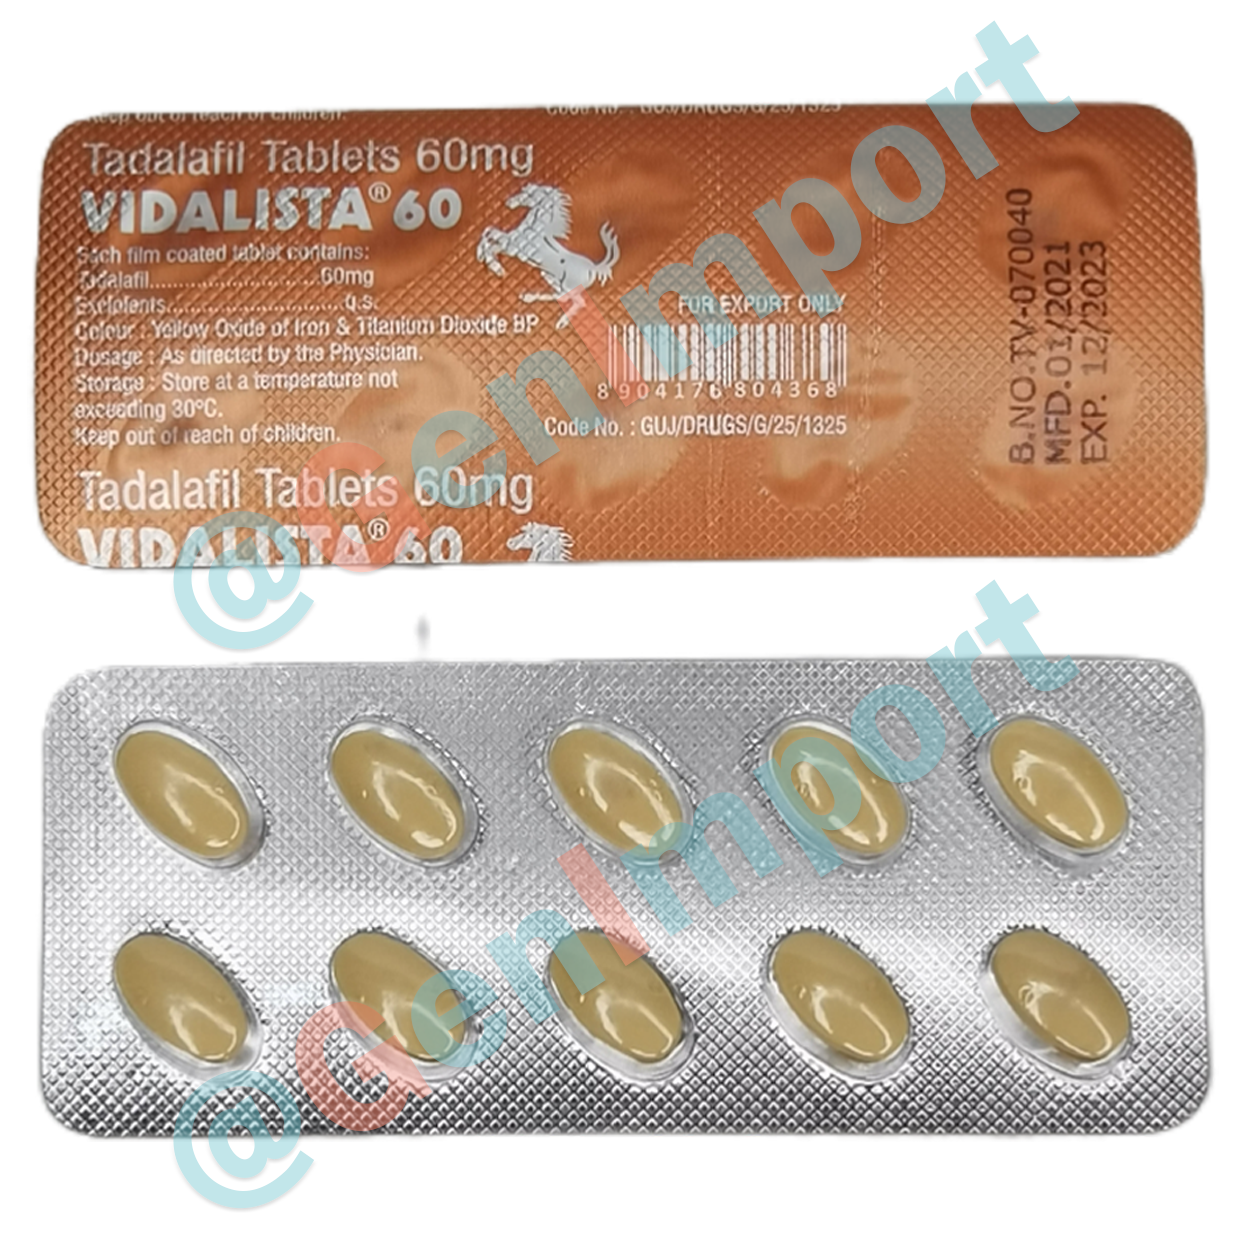 Vidalista Видалиста 60, аналог сиалиса (тадалафил, tadalafil)